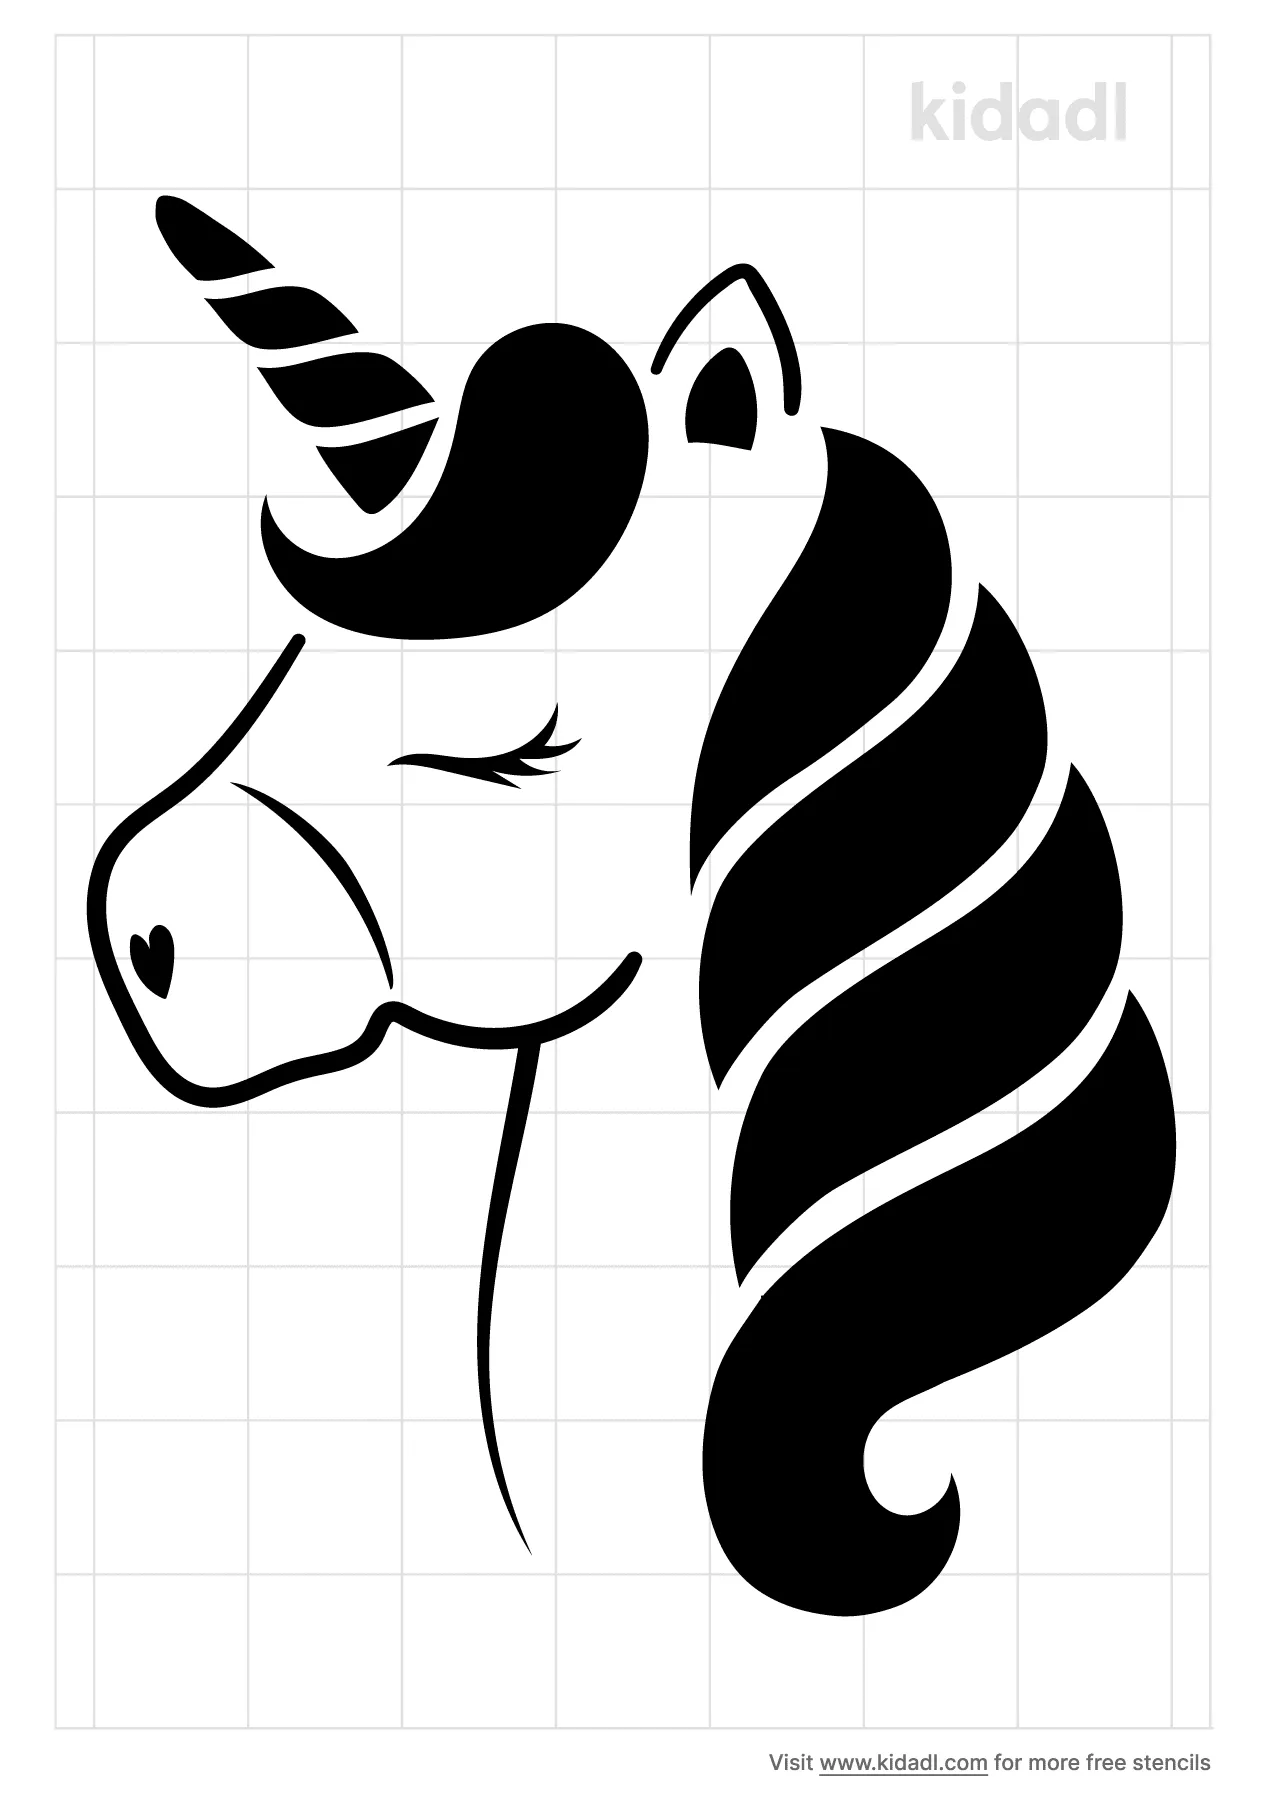 unicorns stencils free printable stencils kidadl